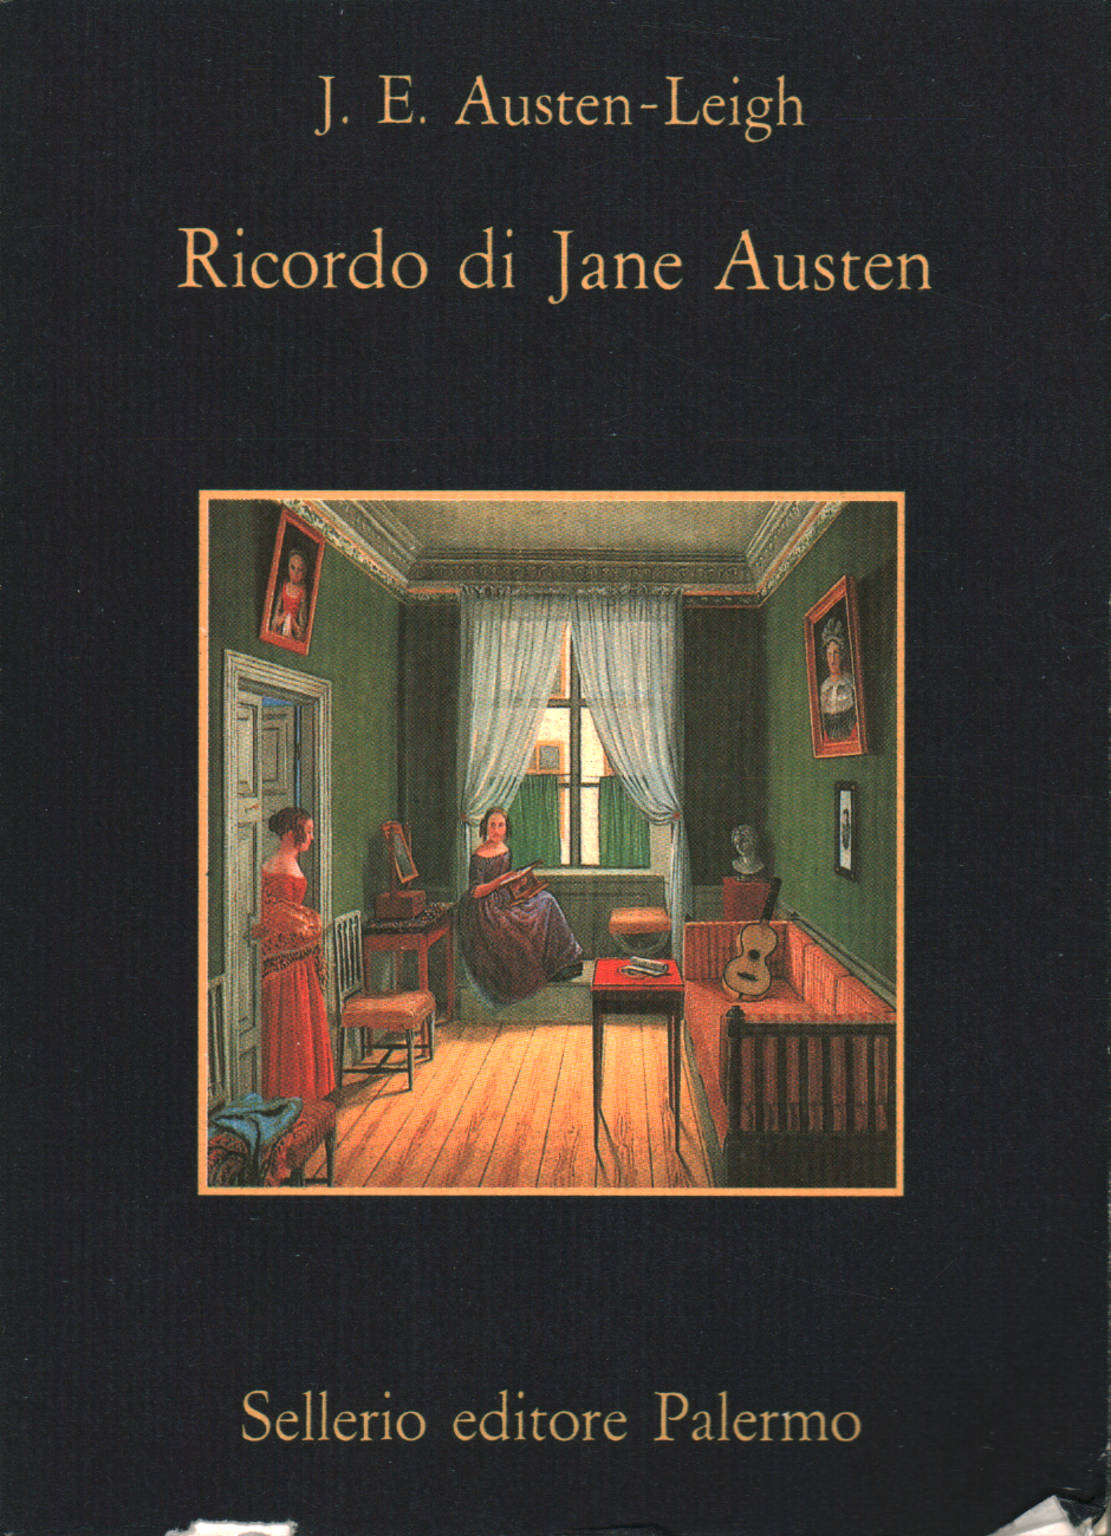 Memoria de Jane Austen, J.E. Austen-Leigh